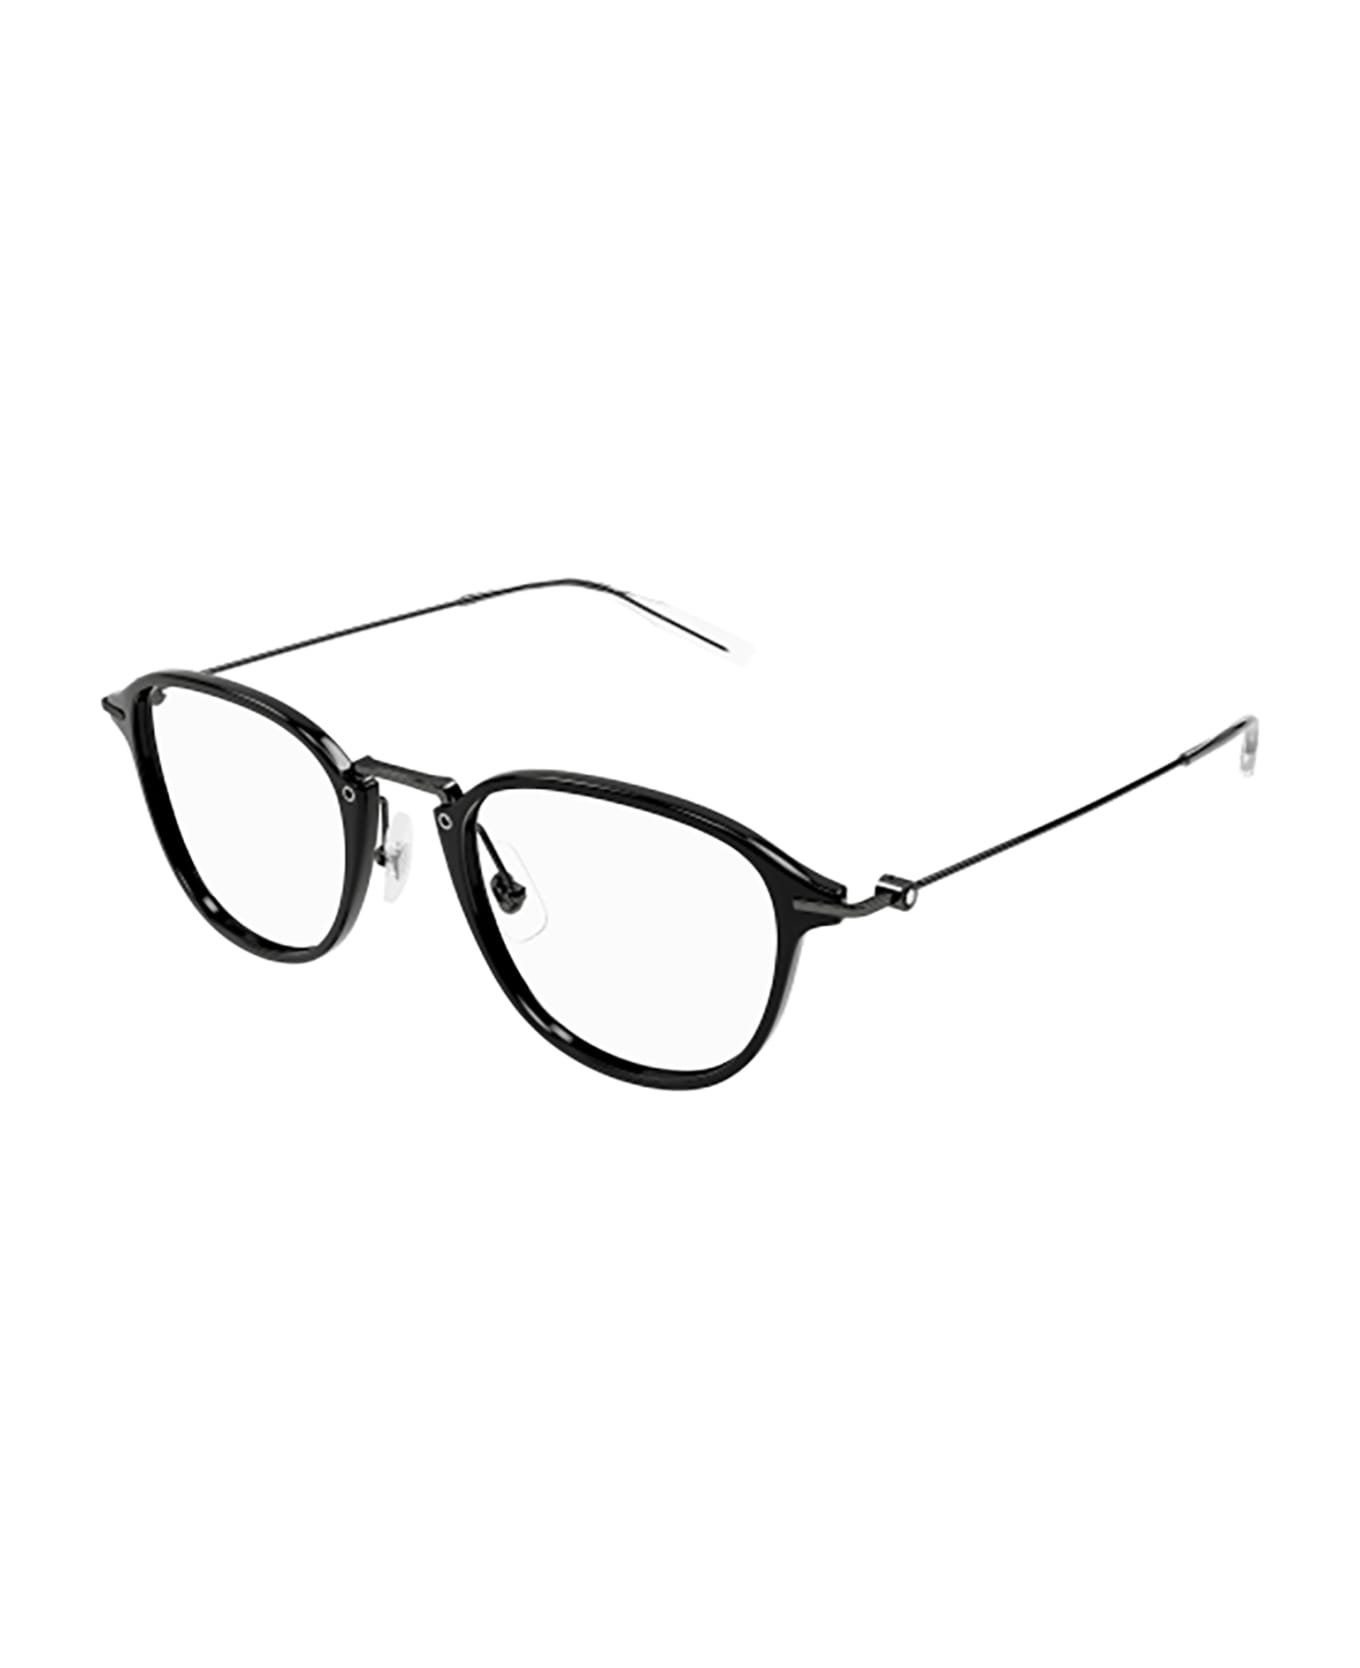 Montblanc MB0155O Eyewear - Black Ruthenium Trans アイウェア